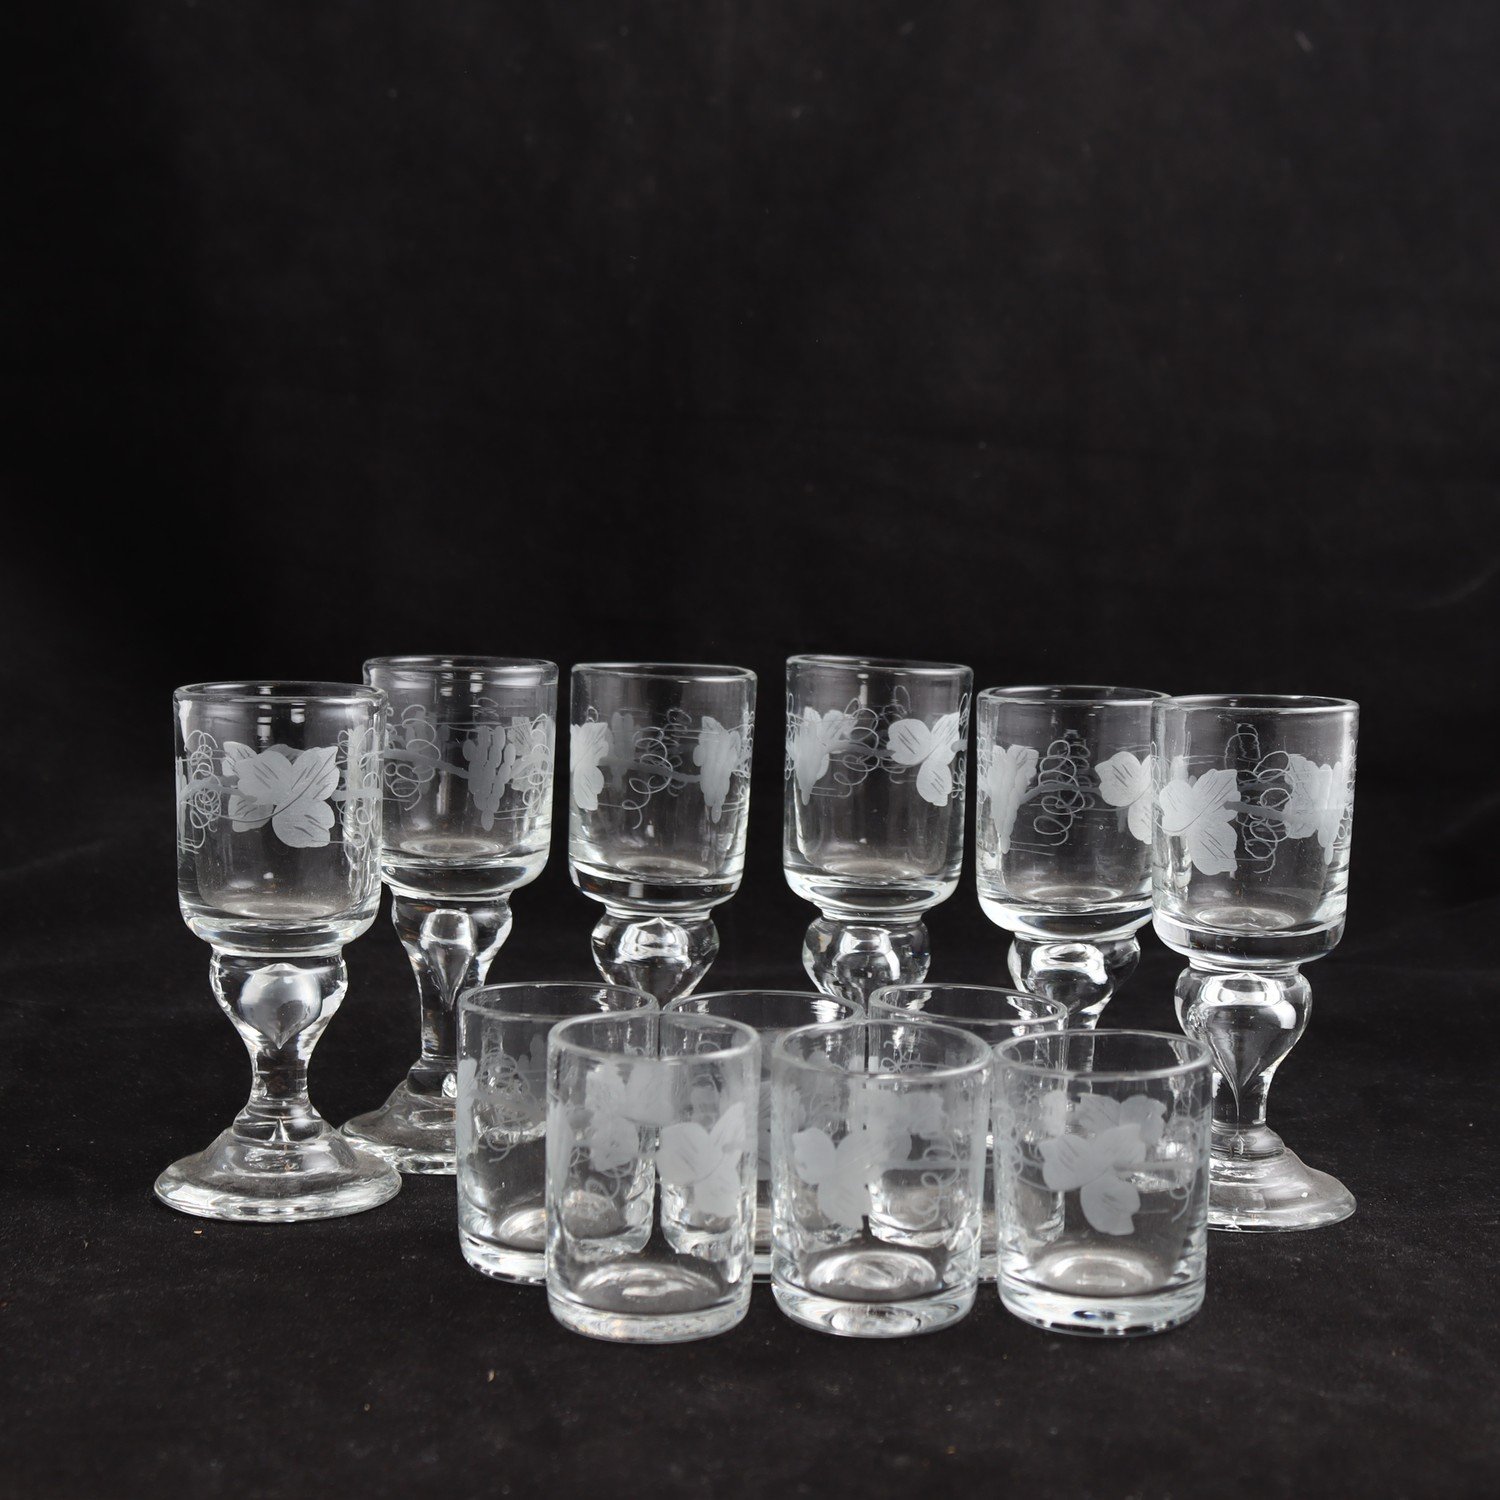 Glas, handblåsta med graverad dekor, Reijmyre, 12 st. Endast avhämtning